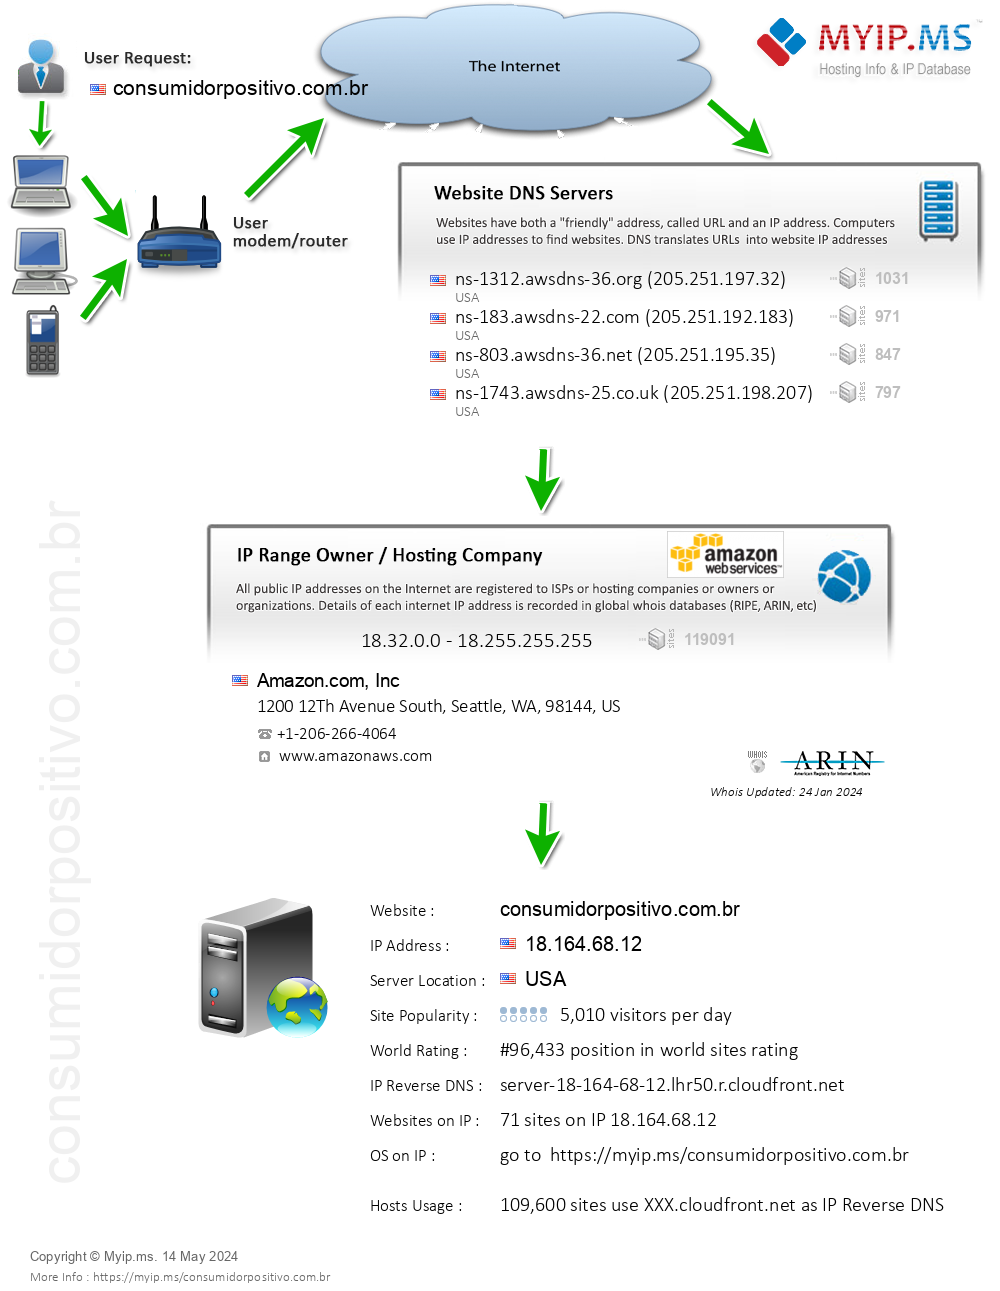 Consumidorpositivo.com.br - Website Hosting Visual IP Diagram